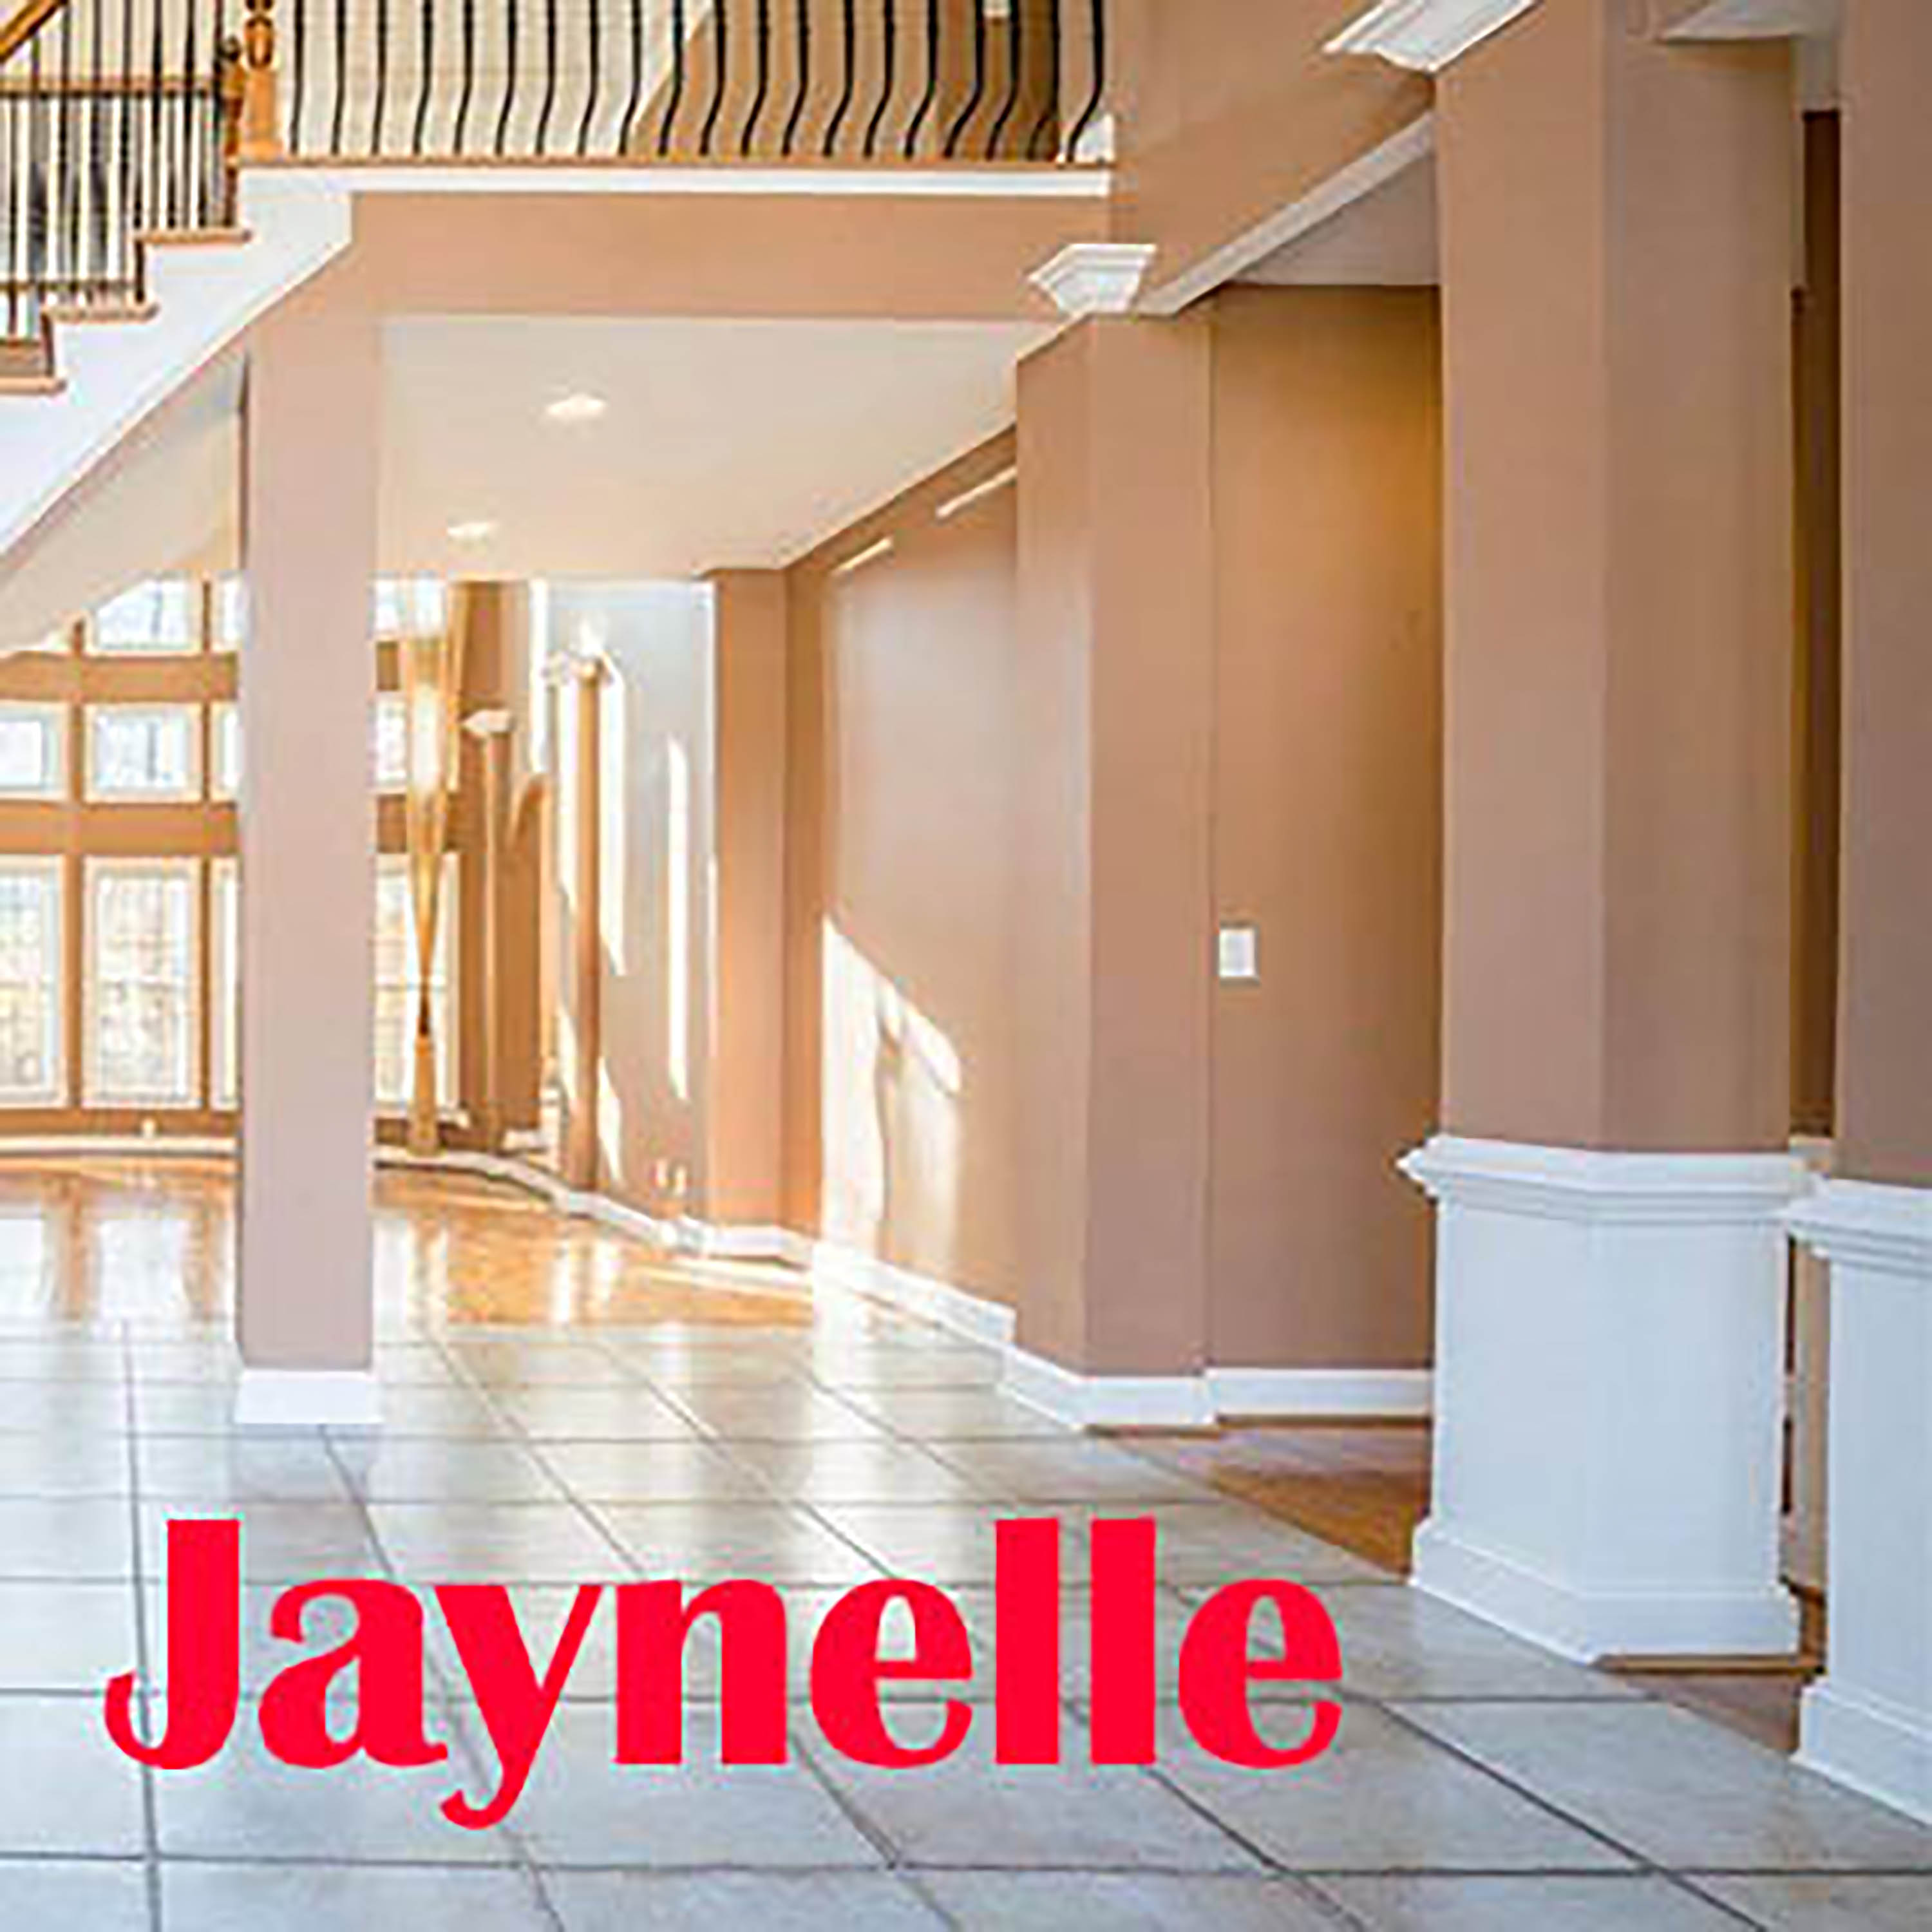 Jaynelle